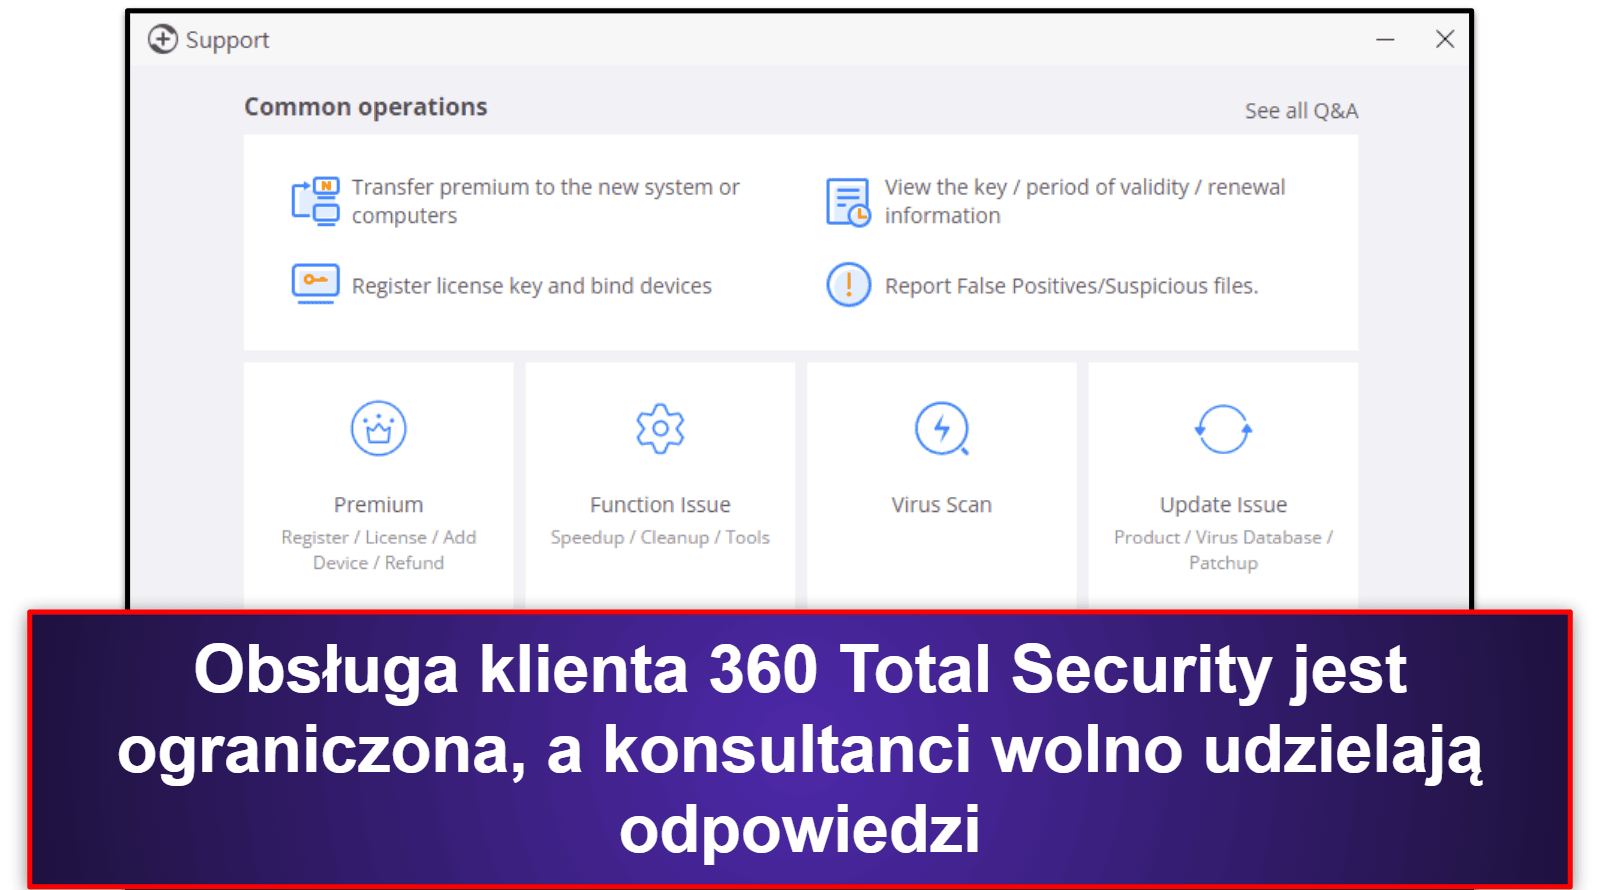 Obsługa klienta 360 Total Security